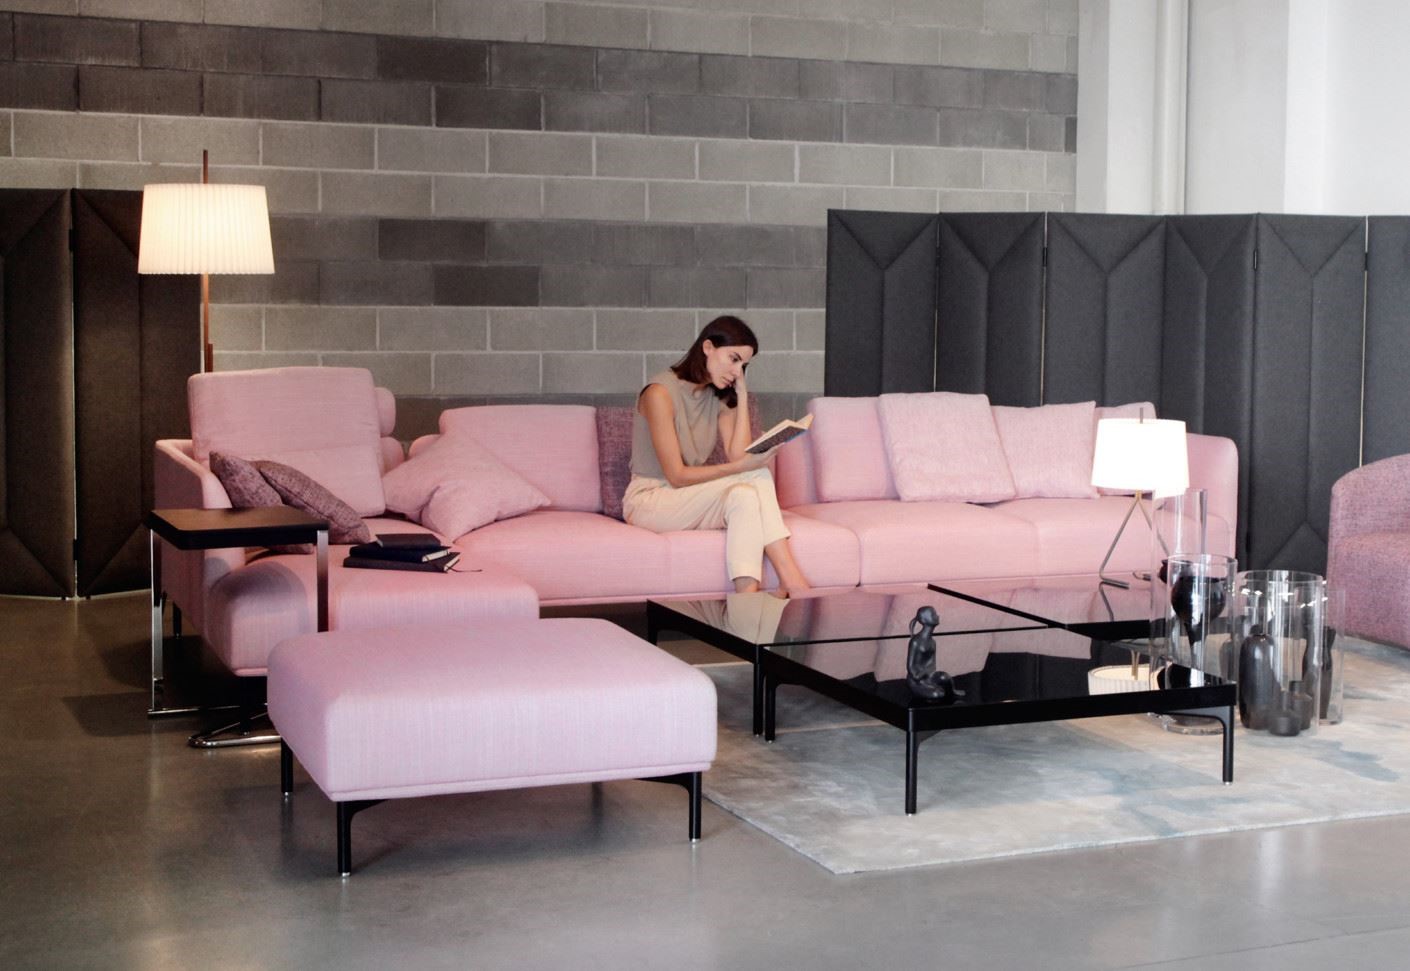 Модульный диван-конструктор розового цвета